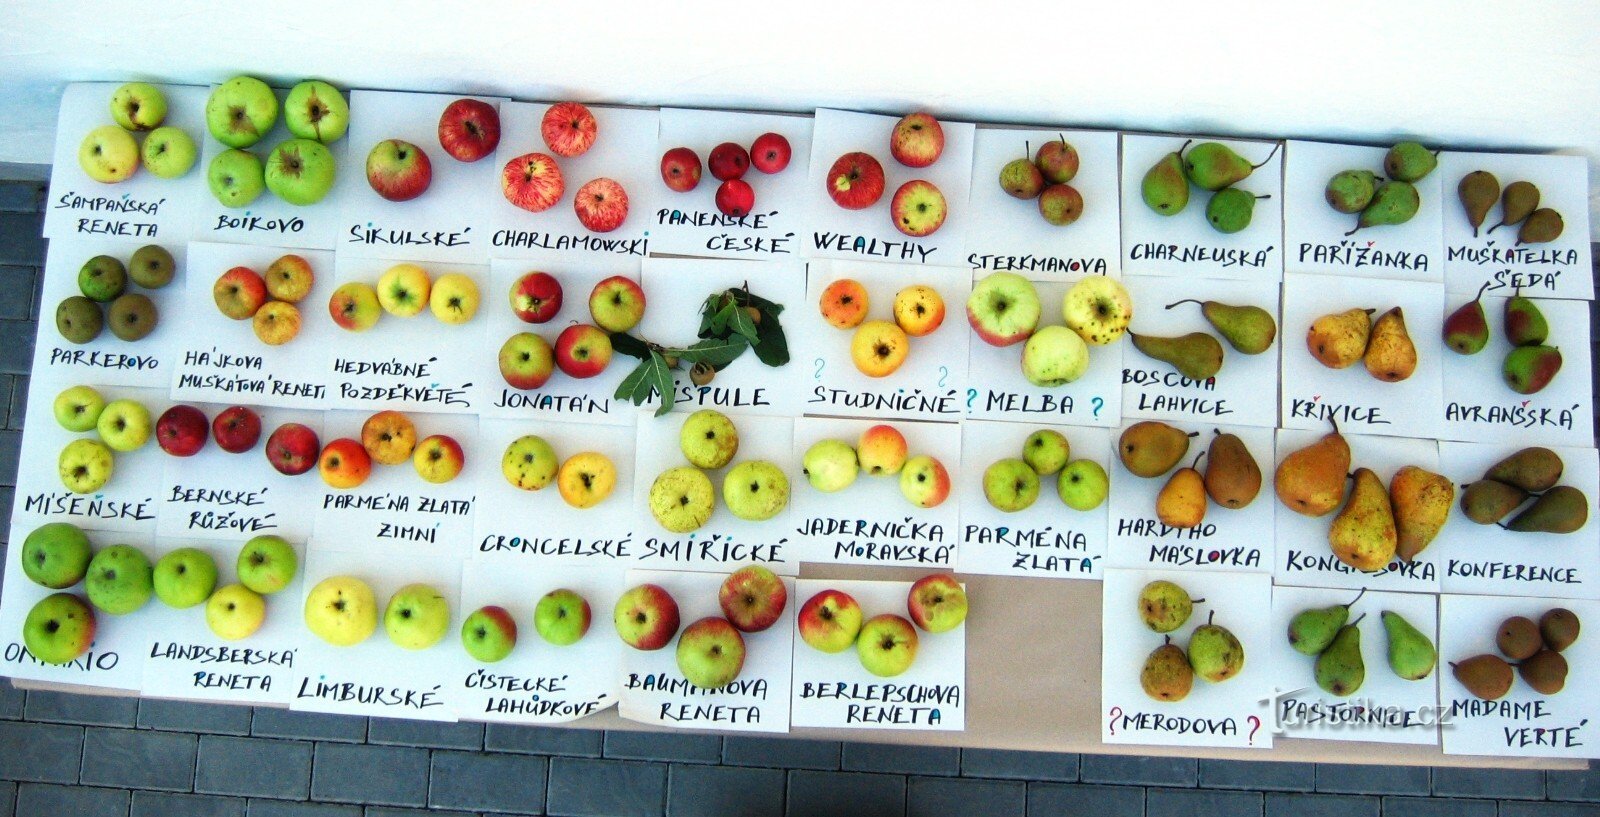 Jabukovača iz Hostětína proizvodi se od mješavine bijelih karpatskih sorti jabuka, jejic